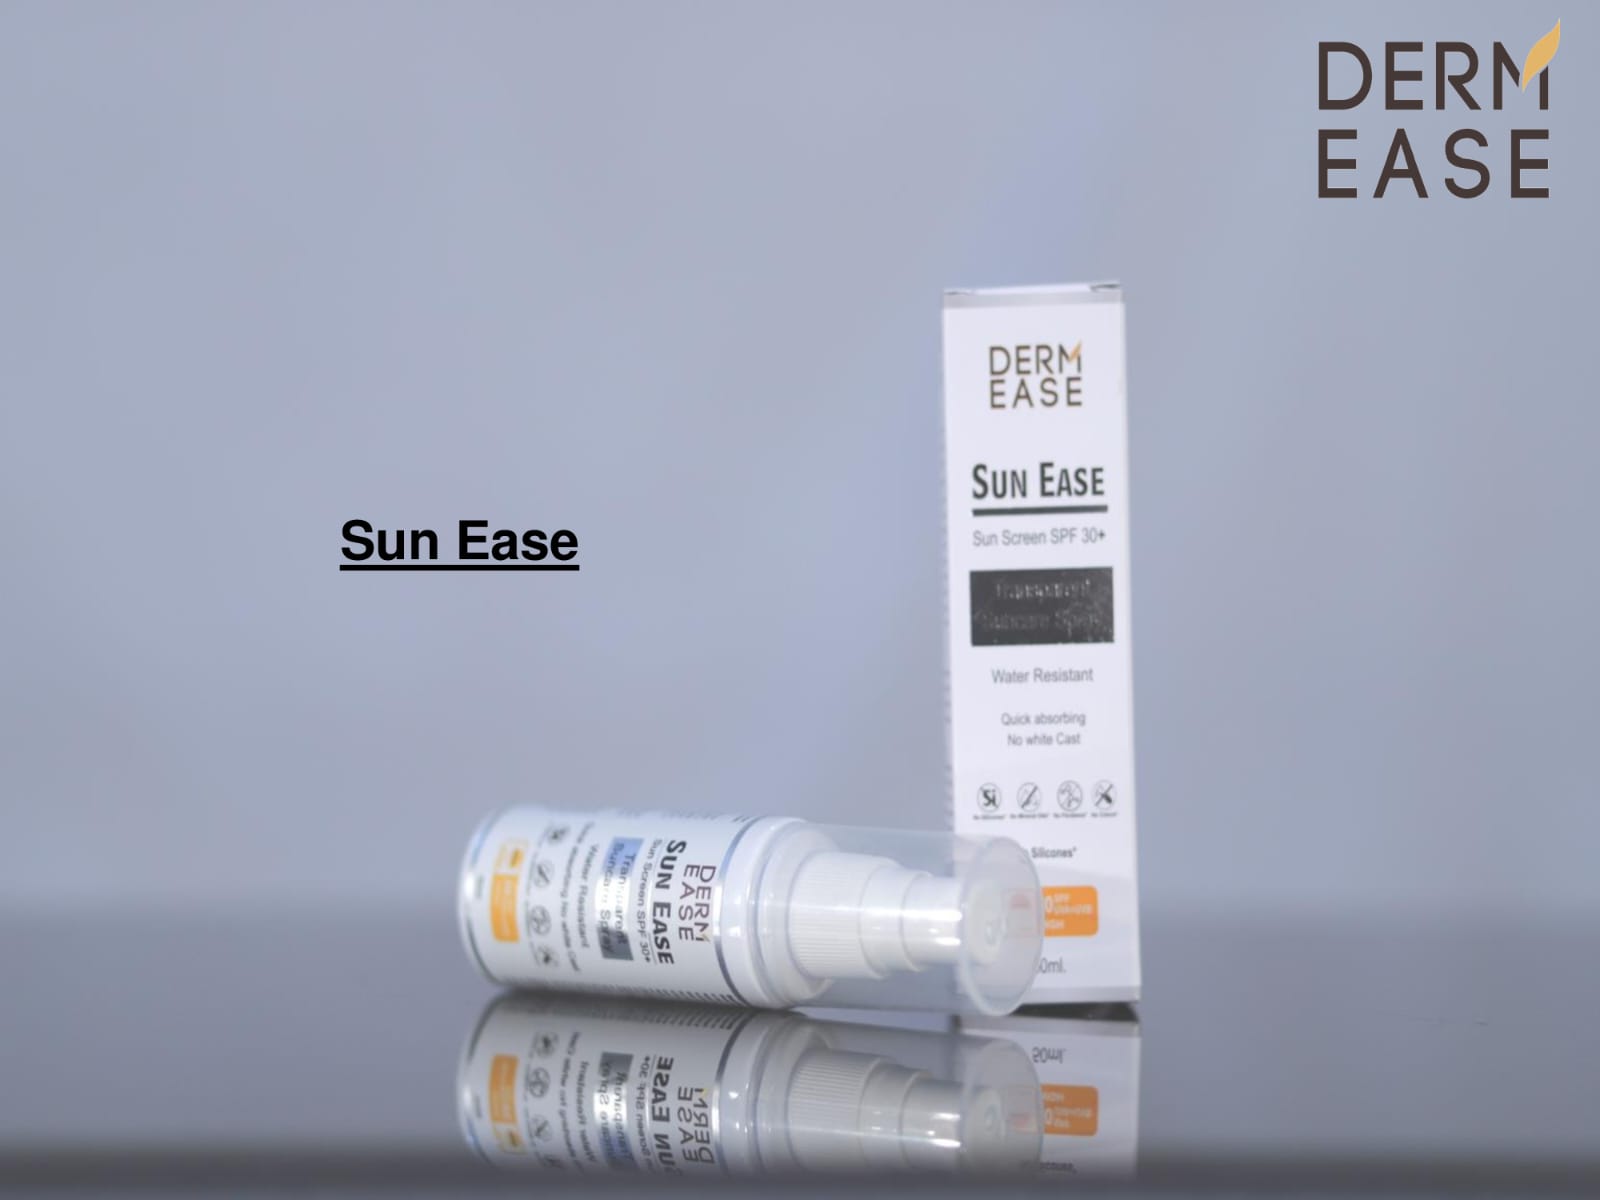 DERM EASE SUN-EASE SUNSCREEN SPF 30++SPRAY